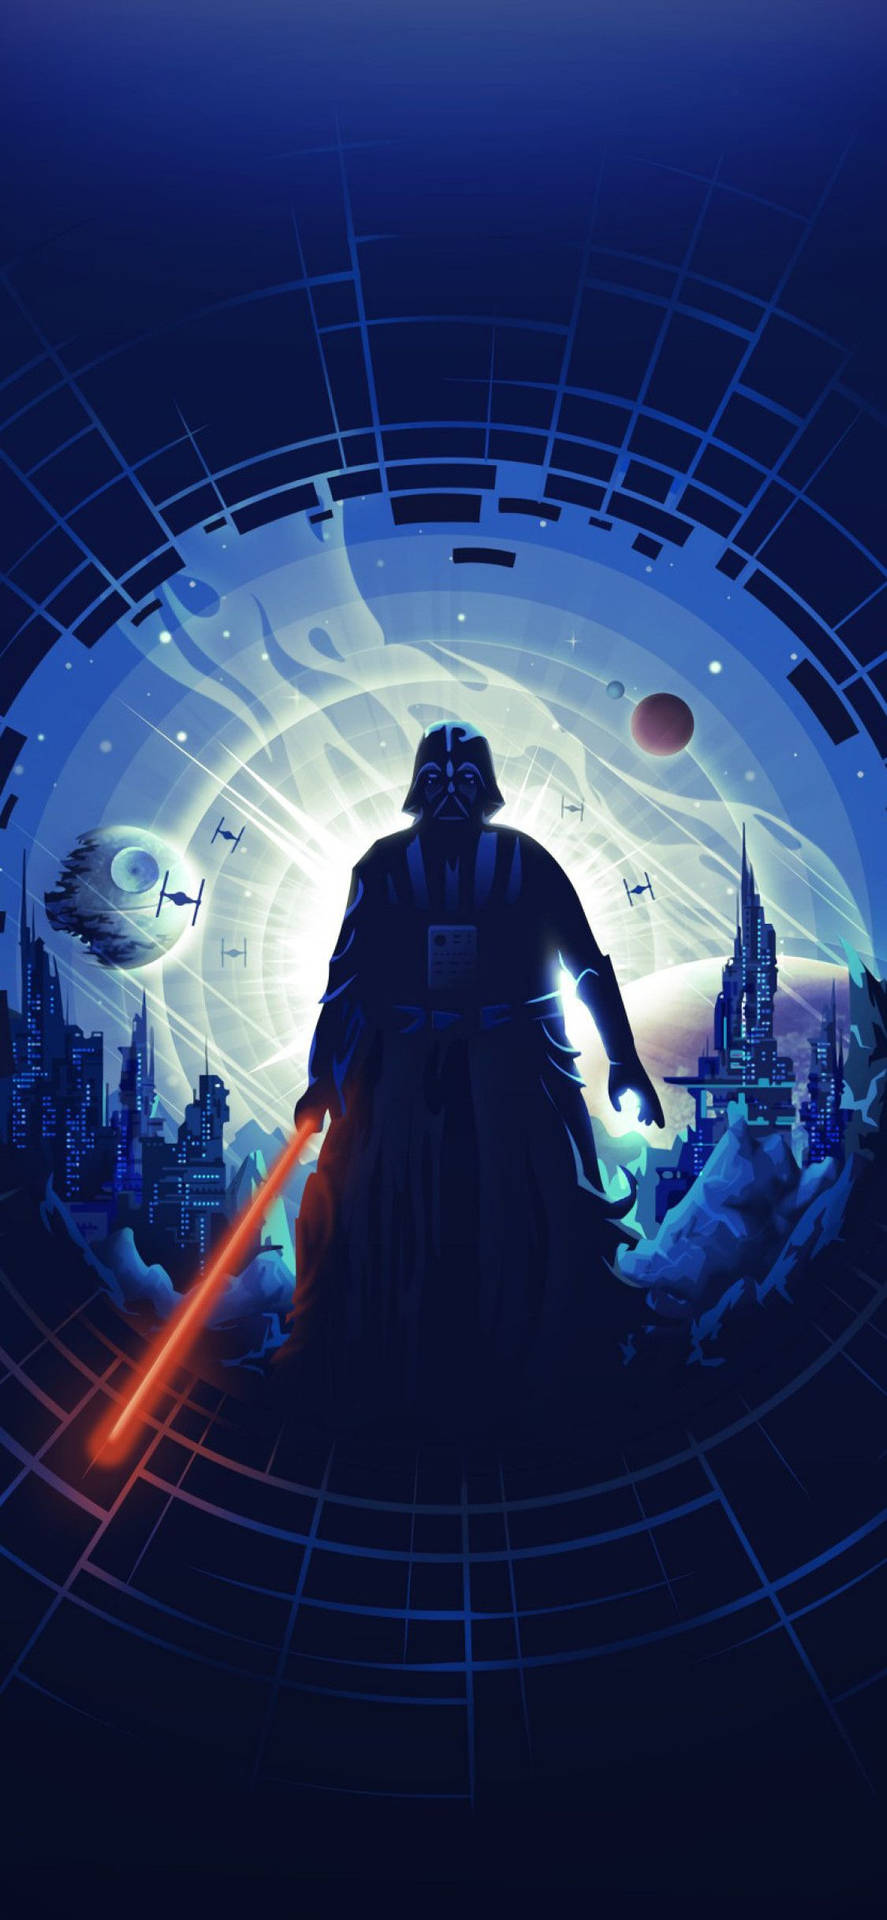 Darth Vader Star Wars 4k Iphone Background